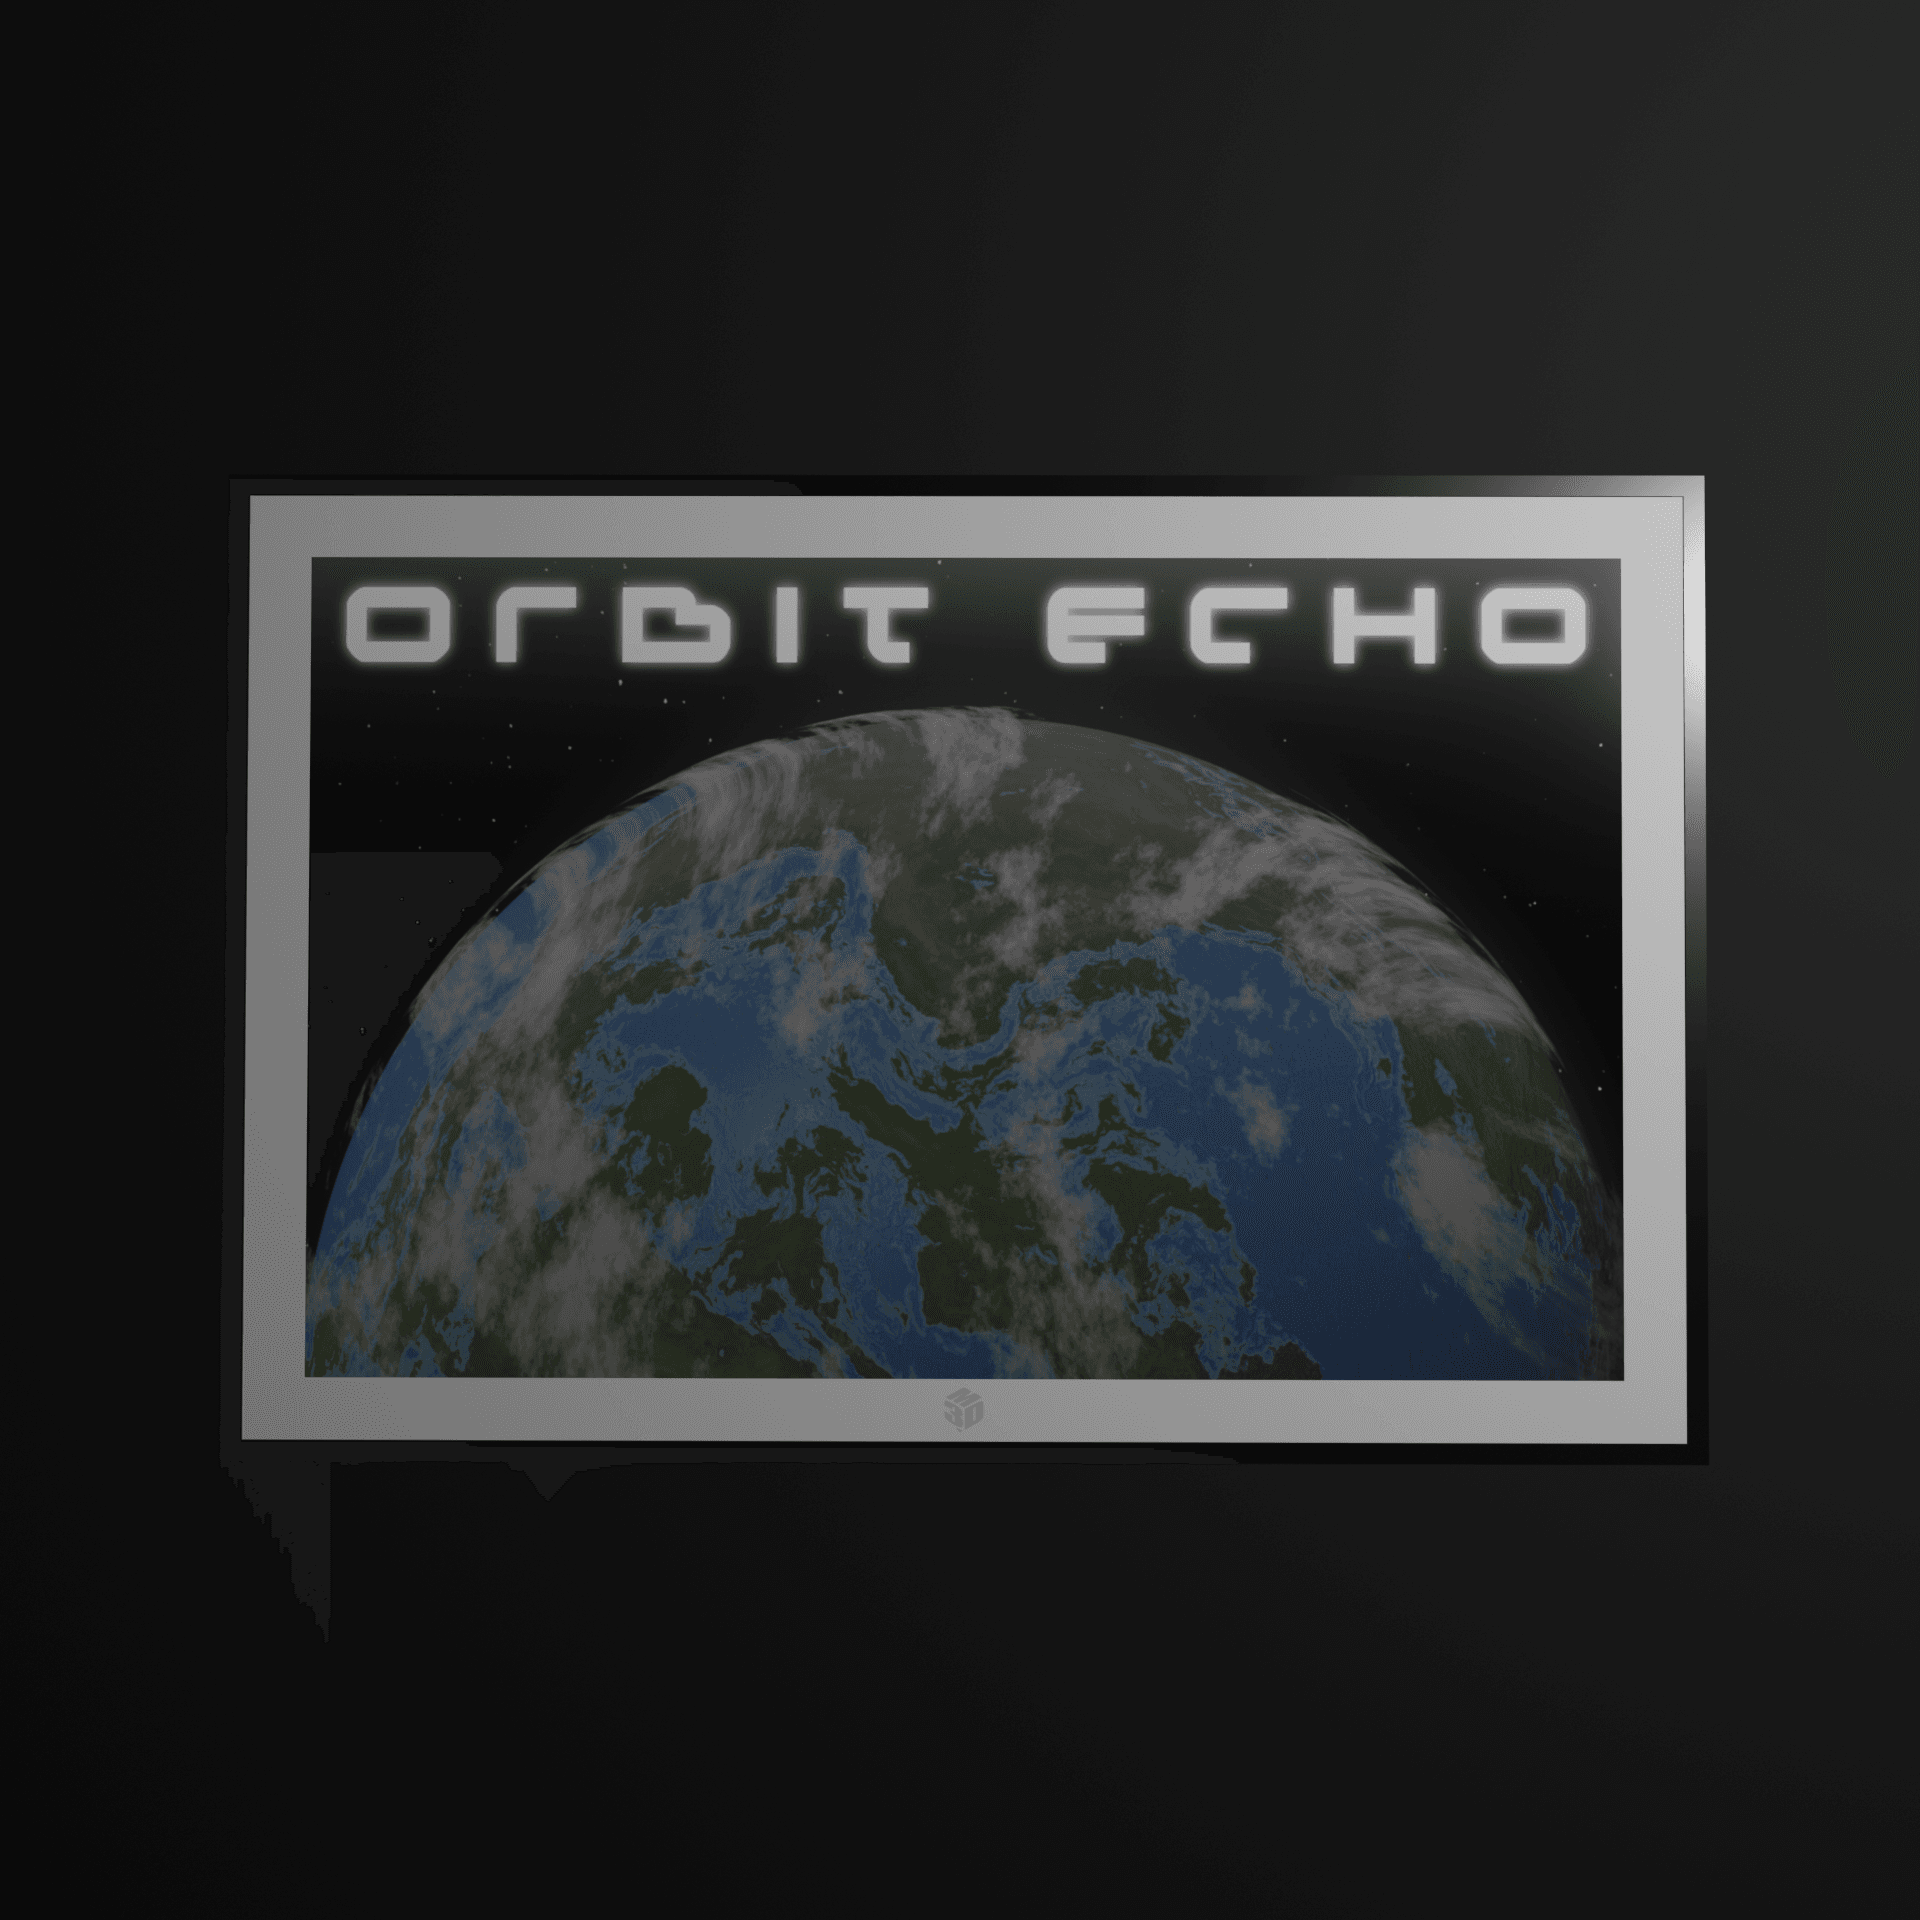 Orbit Echo Poster #2